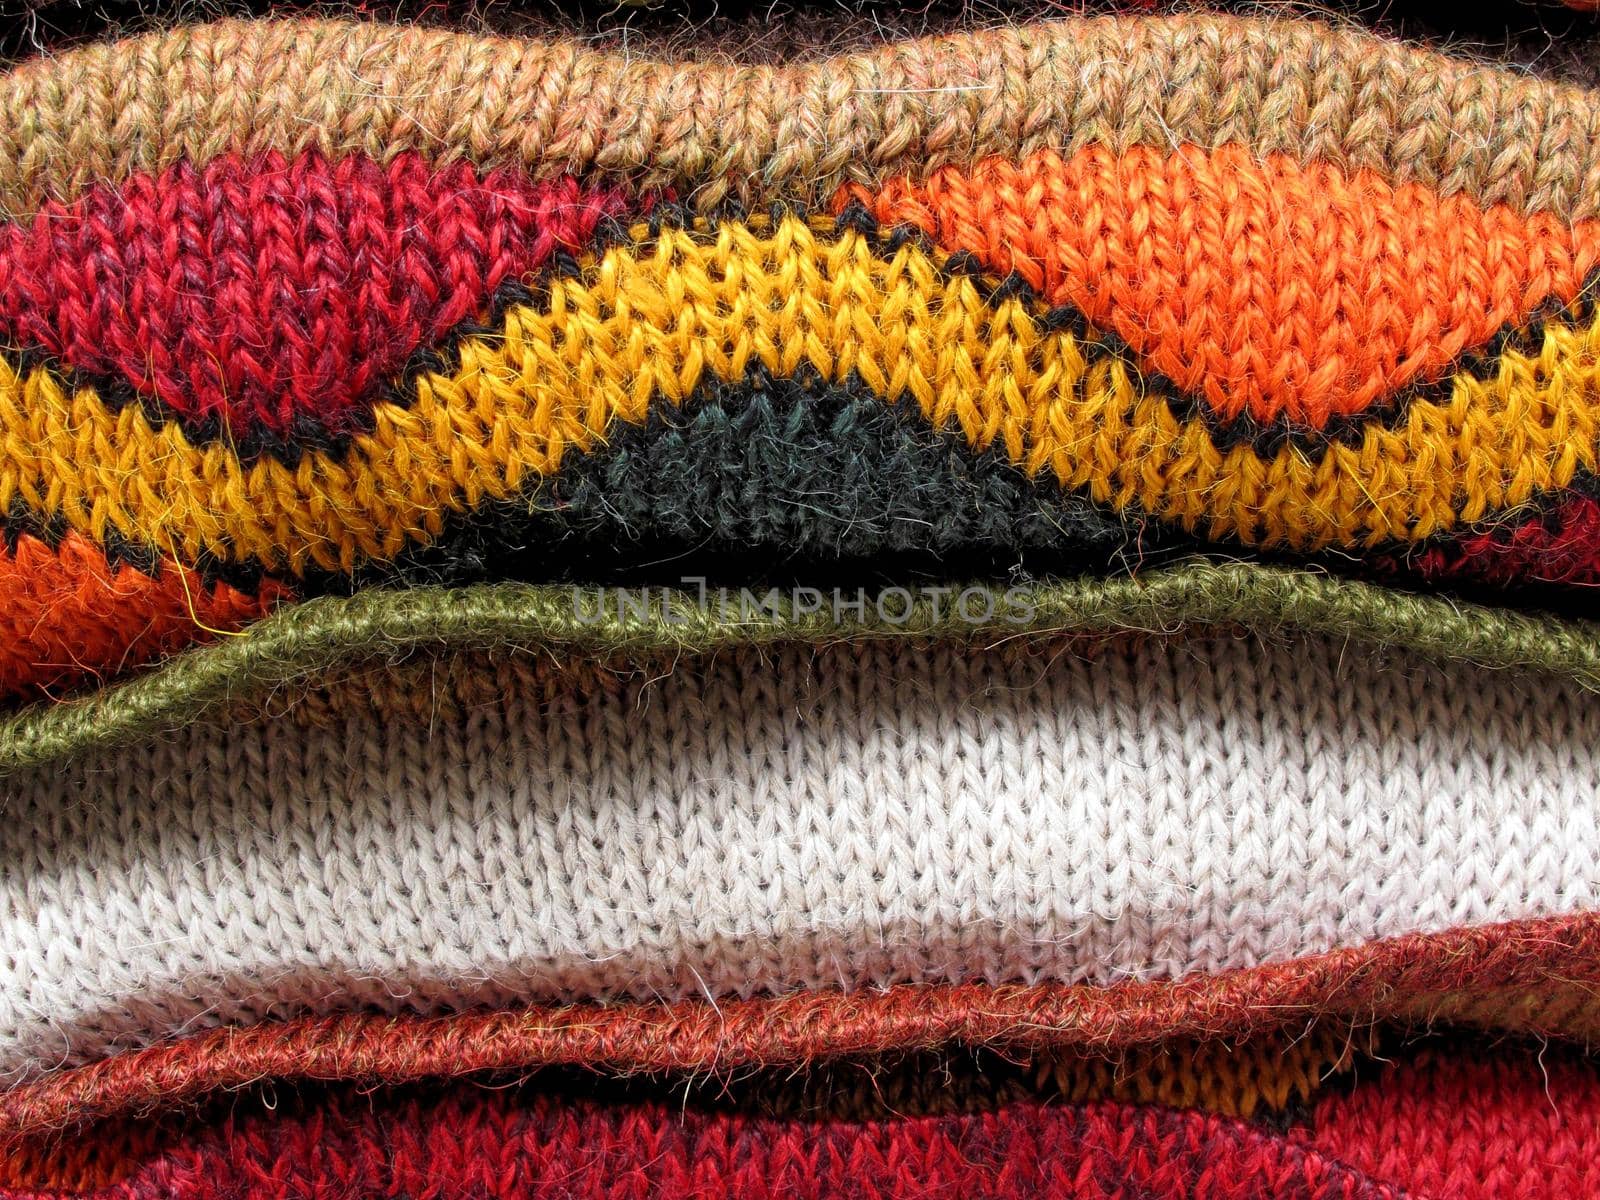 Peruvian hand made woolen fabric by aroas